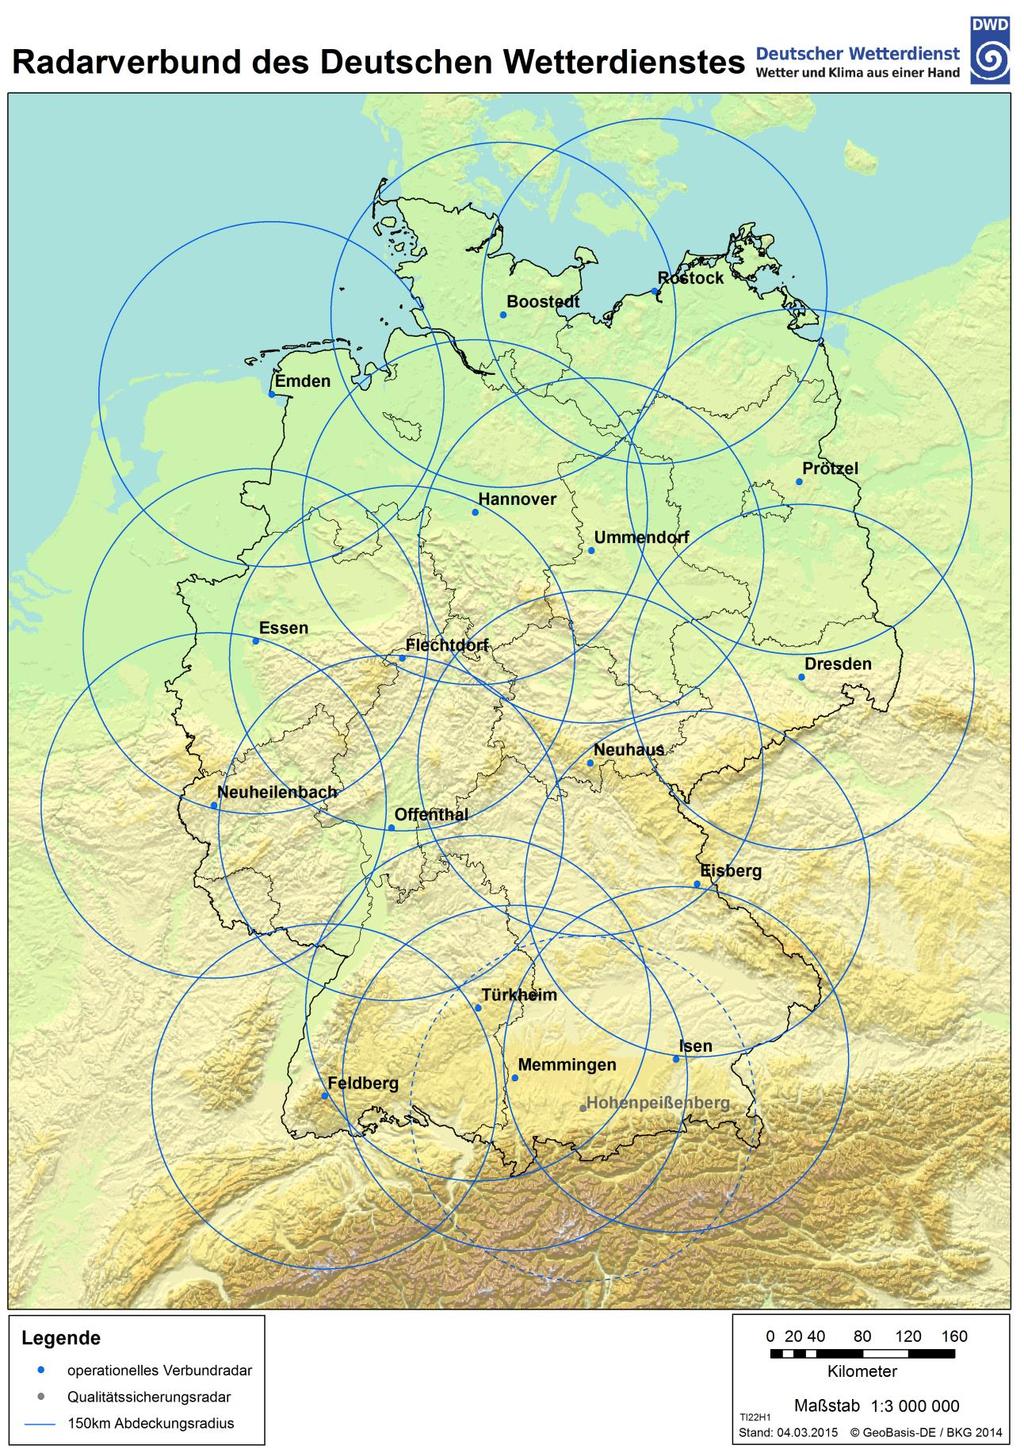 Abb. 5: Radarverbund des Deutschen Wetterdienstes (zur Verfügung gestellt durch